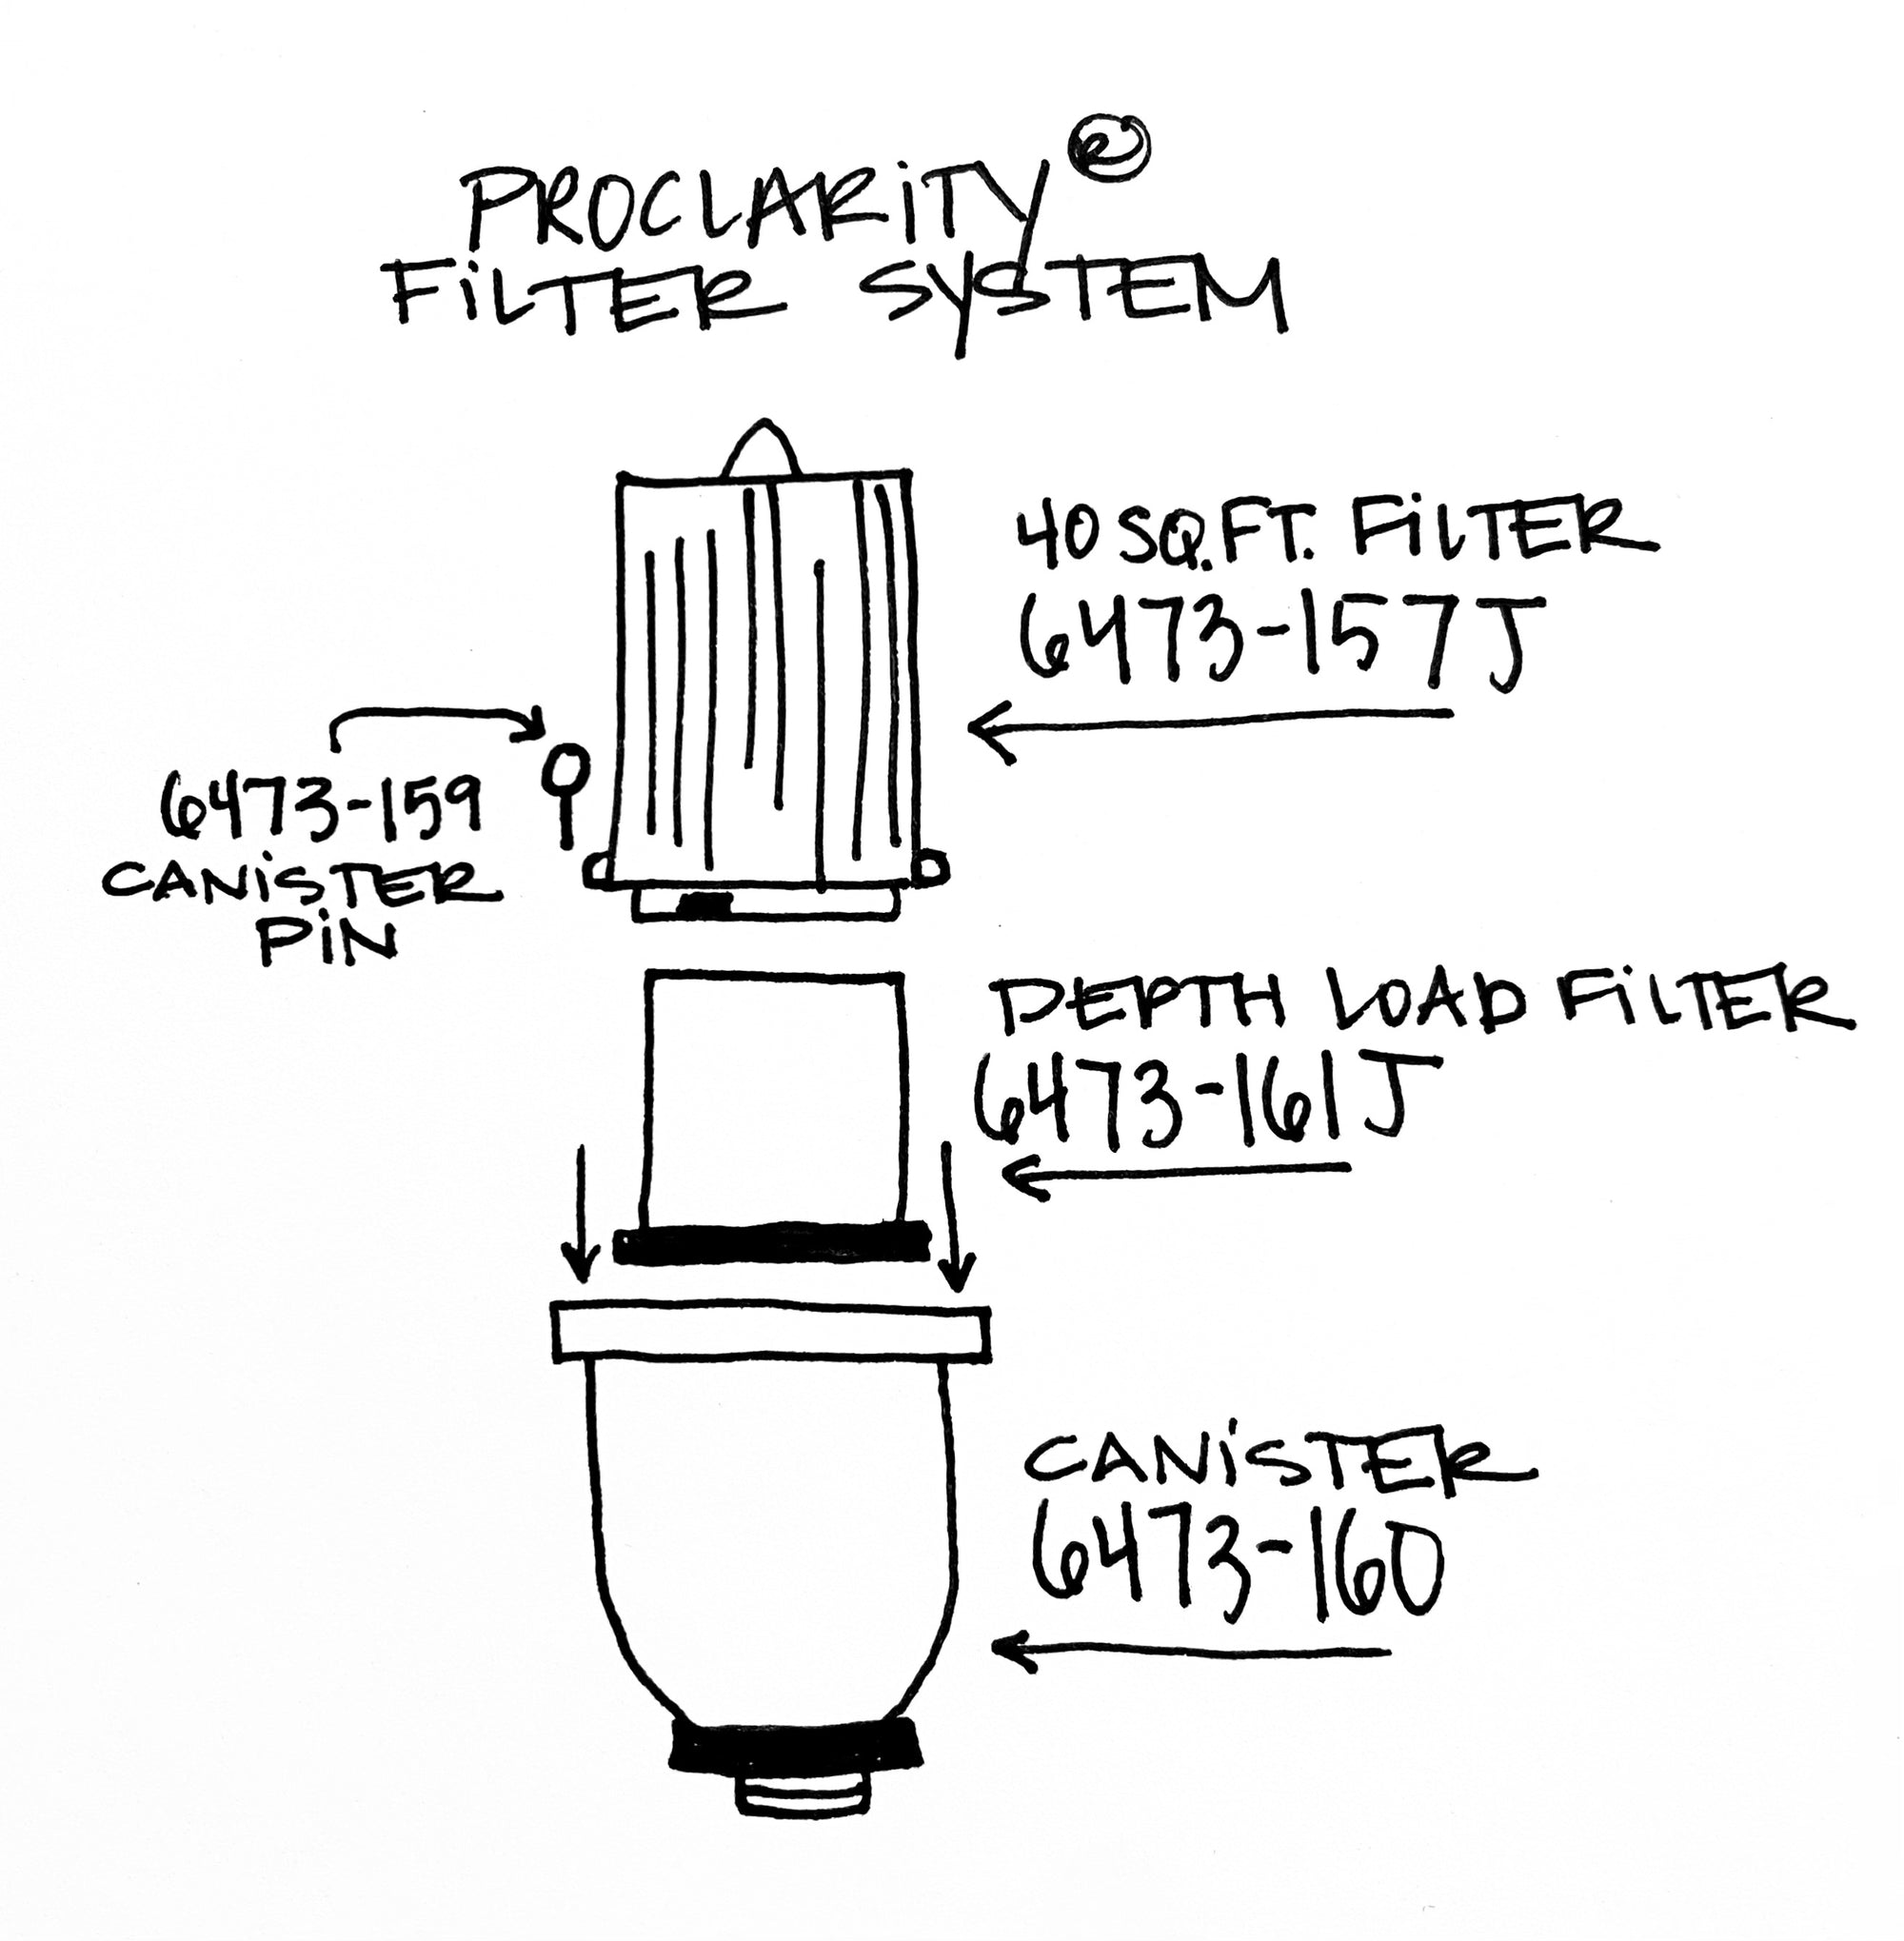 J400 filter, ProClarity, hot tub filter, depth load filter, filter bundle, Jacuzzi filter, 6473-161J